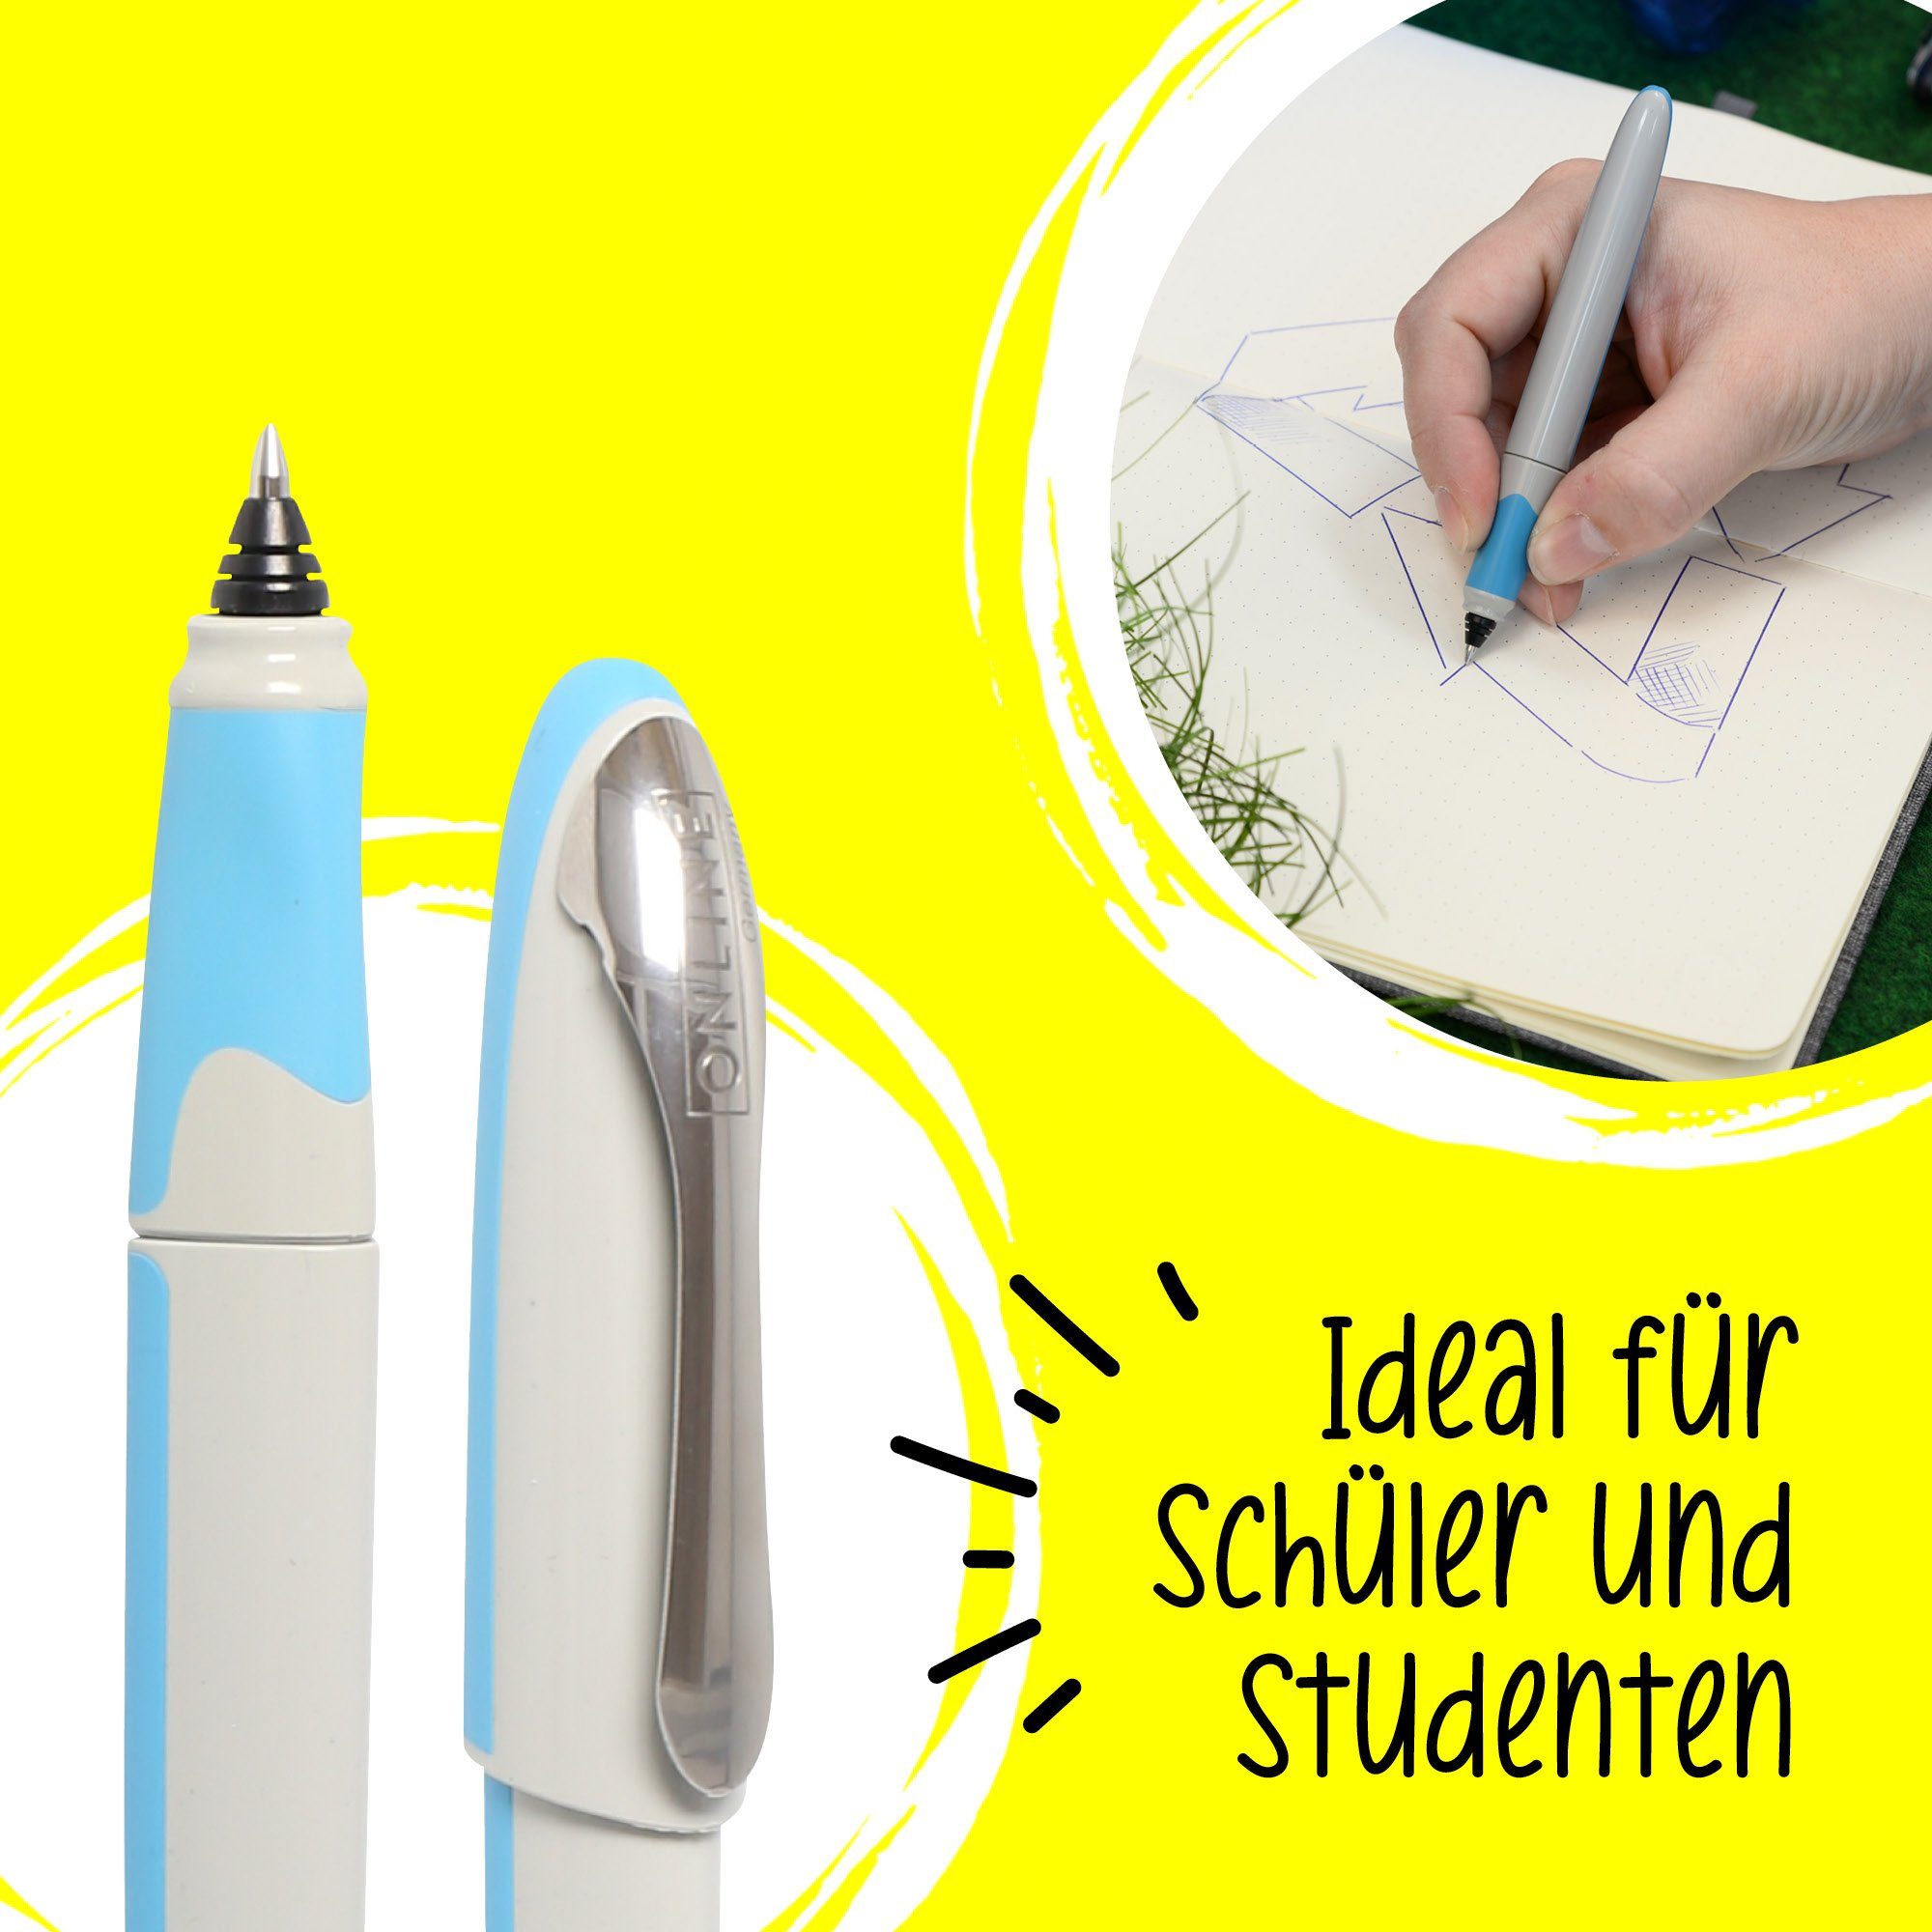 Online Pen für Rollerball ideal die Engel Schule Air, Blauer ergonomisch, Tintenroller Zertifiziert